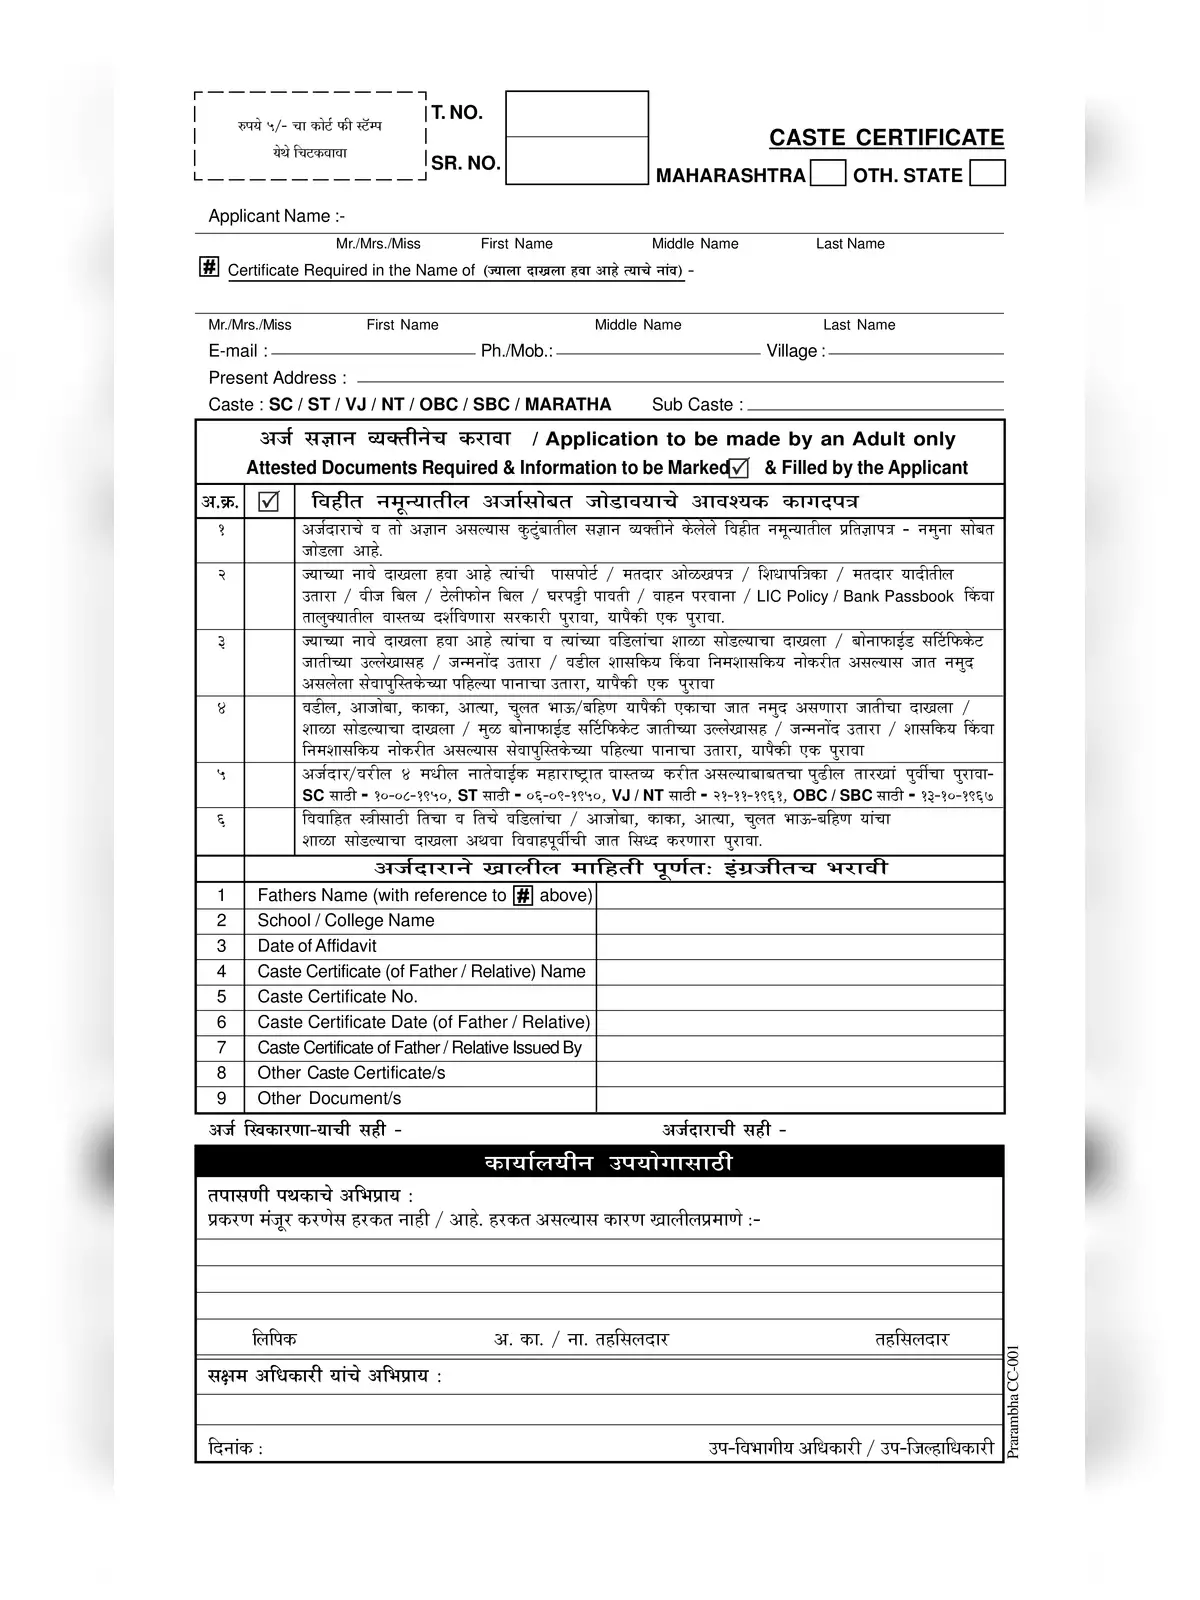 Caste Certificate Form Maharashtra